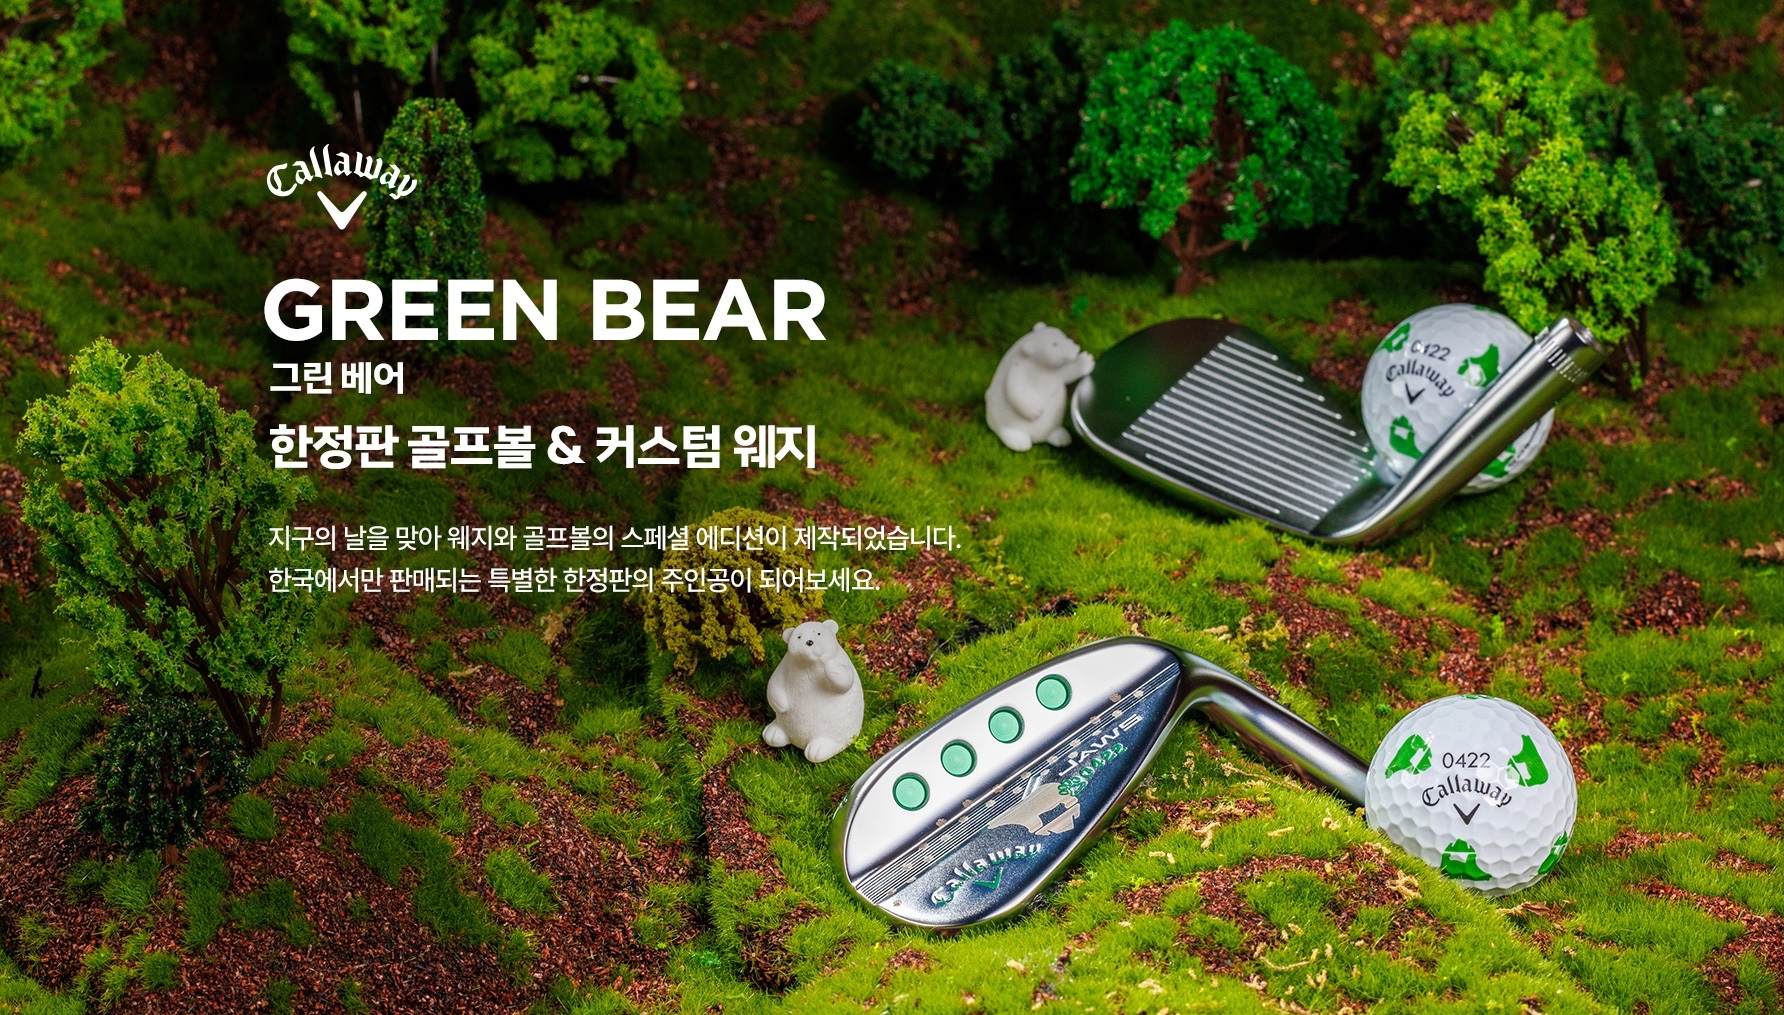 [IT이슈] 골프존커머스 ‘그린 베어 스페셜 에디션’ 제품 판매 수익금 푸른아시아에 기부 外